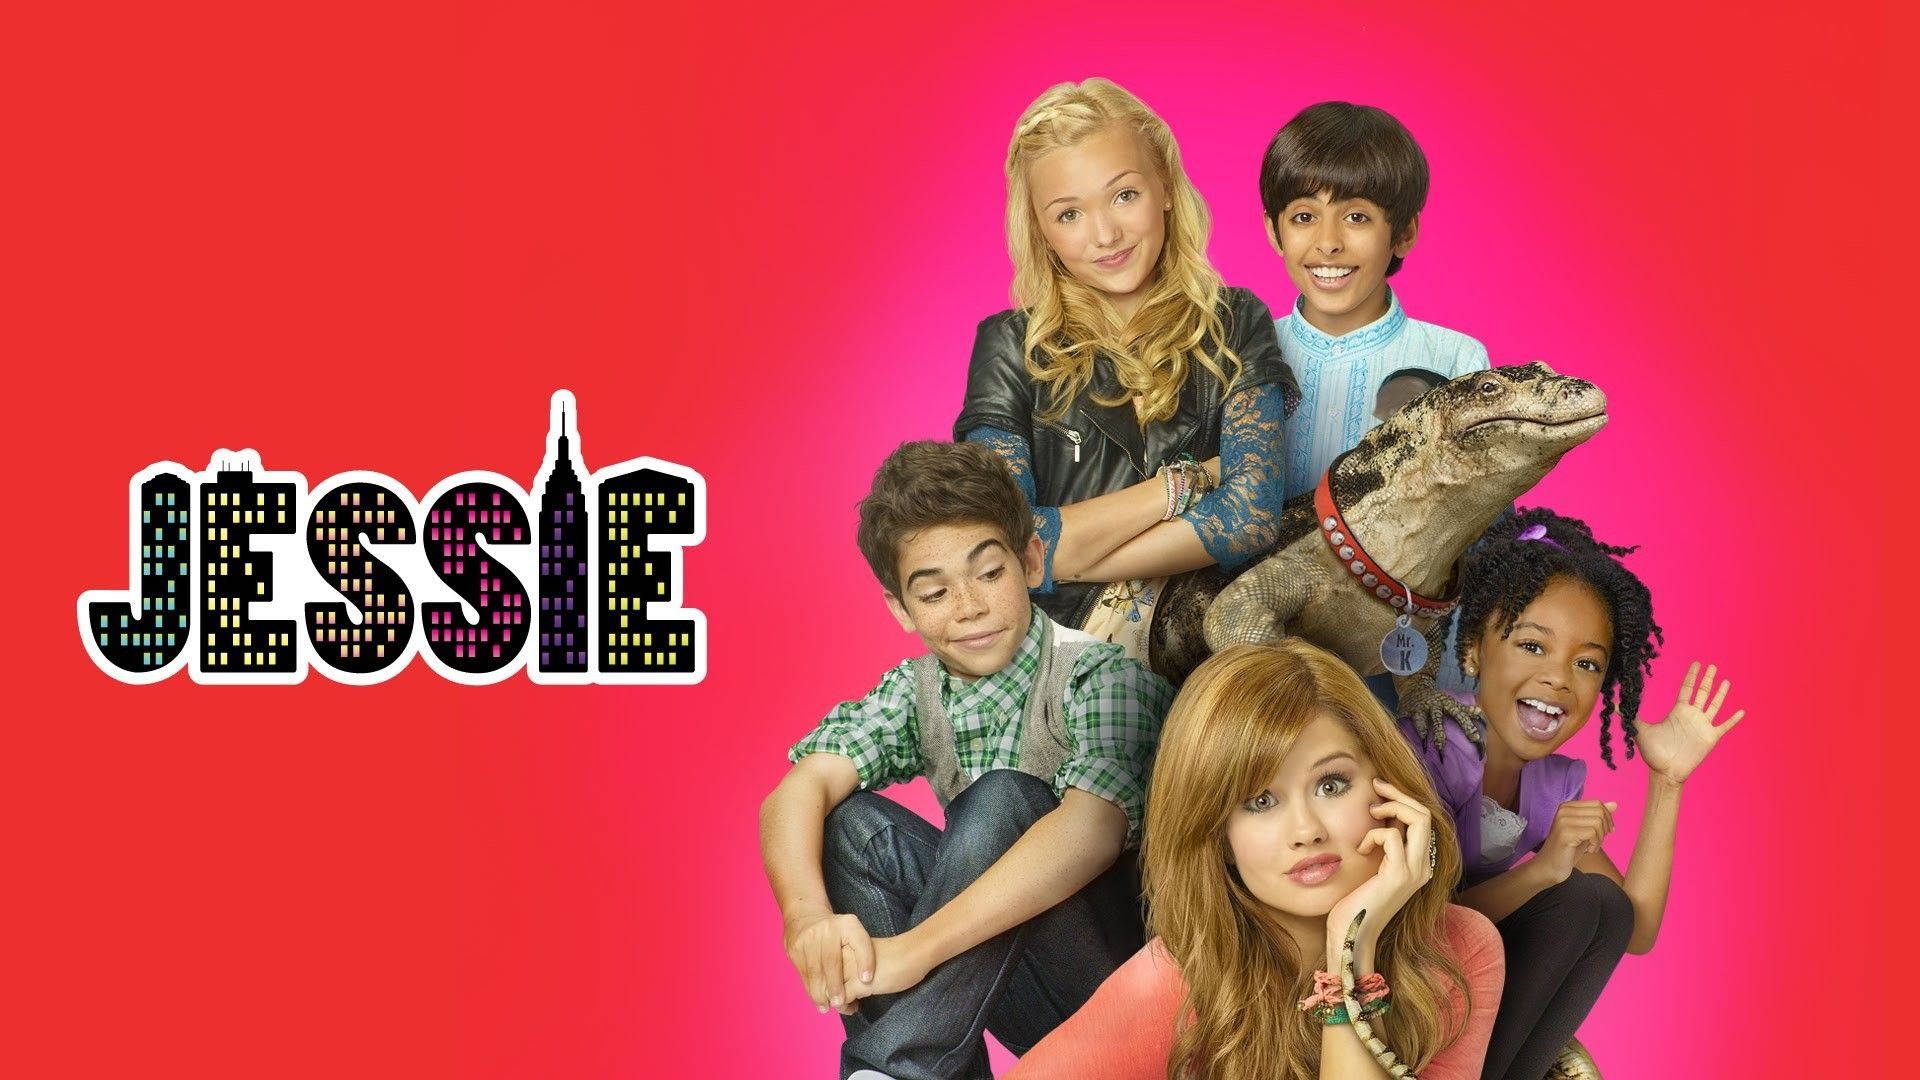 Disney Channel Jessie Poster